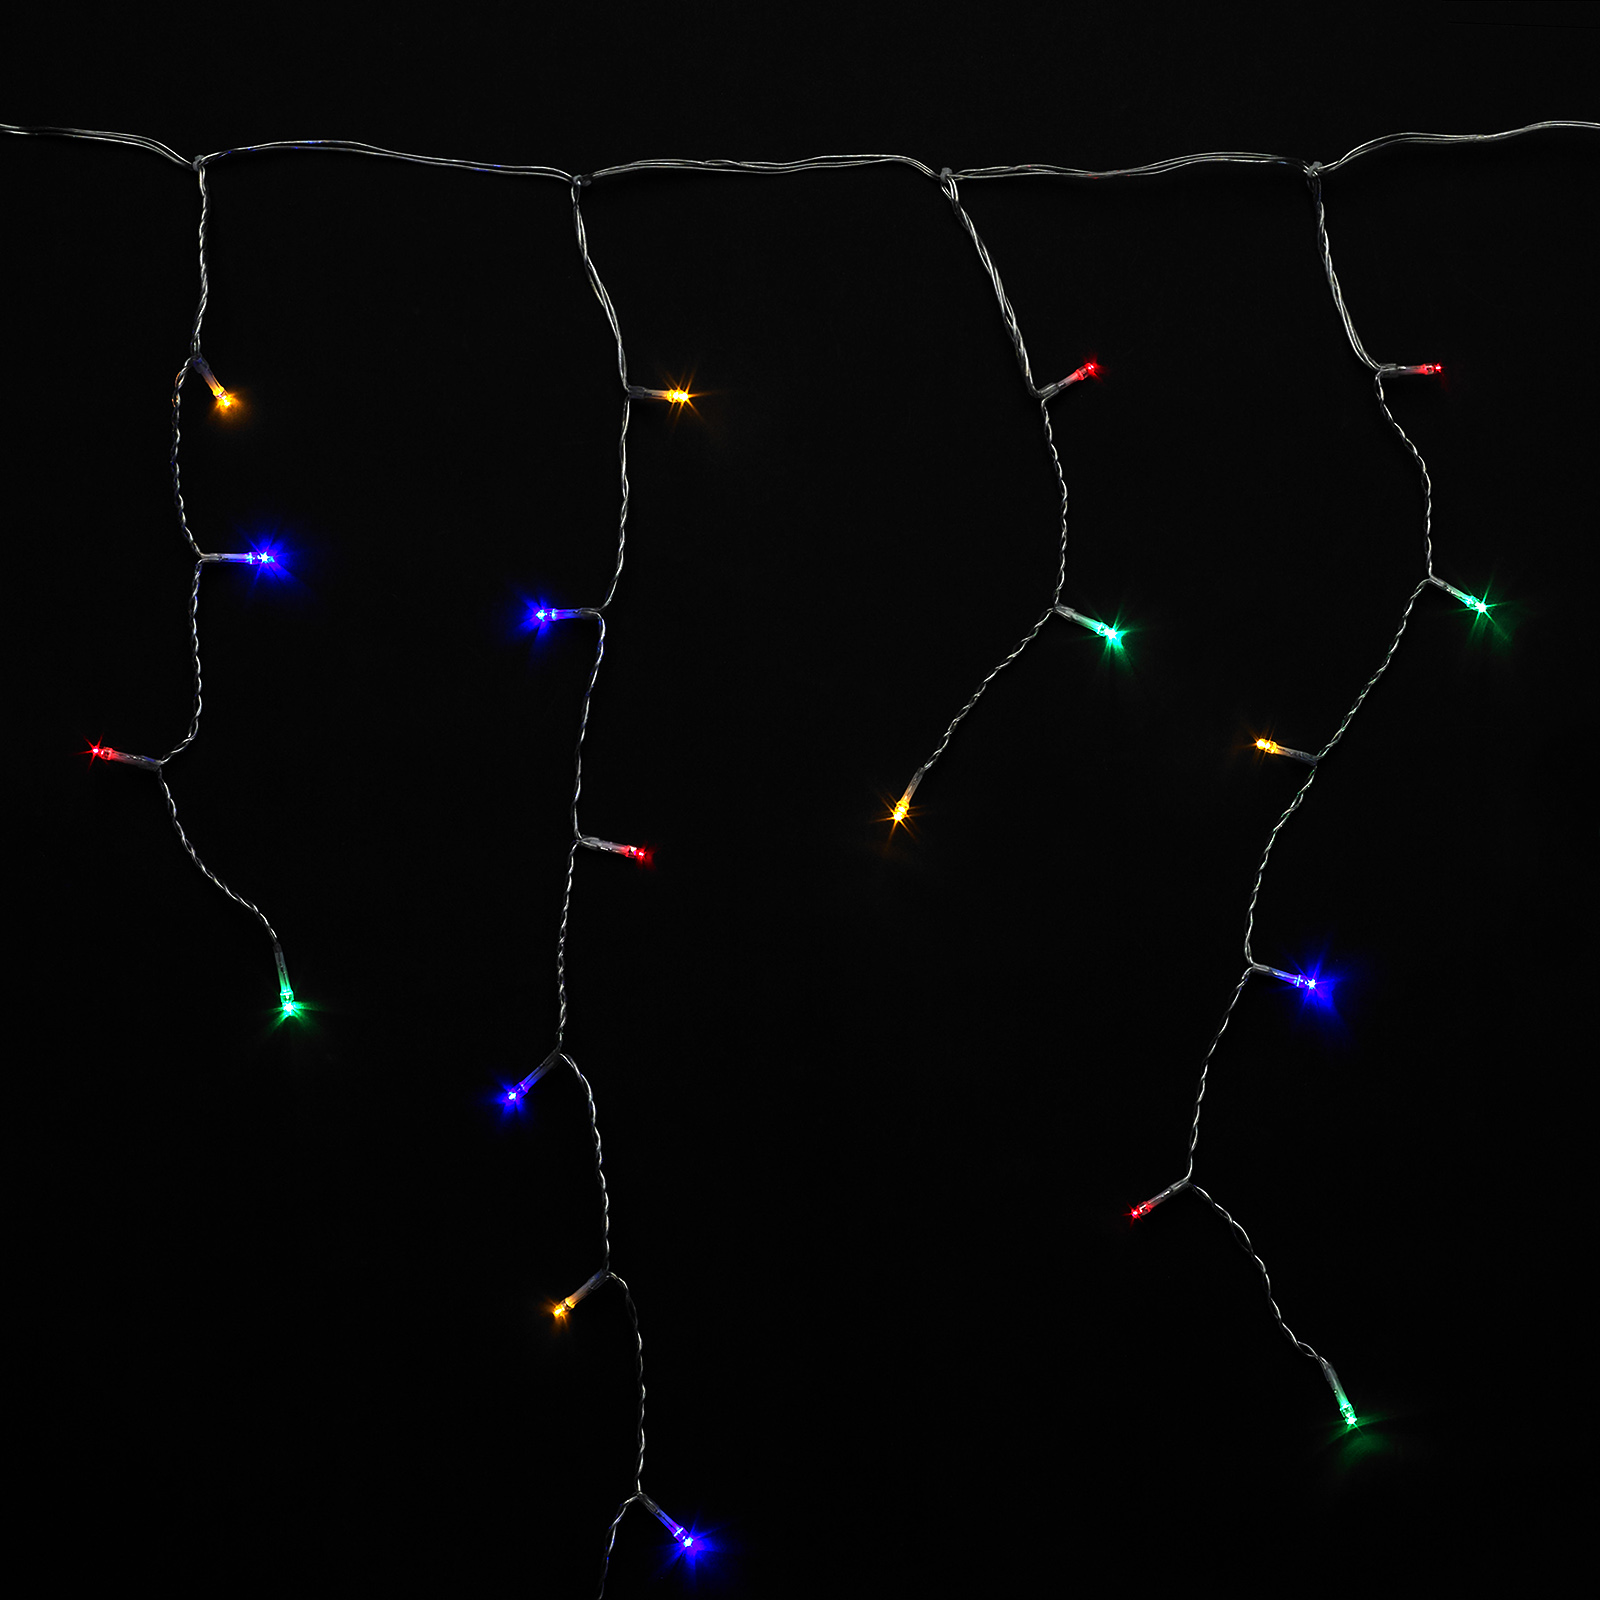 Guirnalda Luces Navidad Cortina 10x1 Metros 345 Leds Multicolor. Luz Navidad Interiores y Exteriores